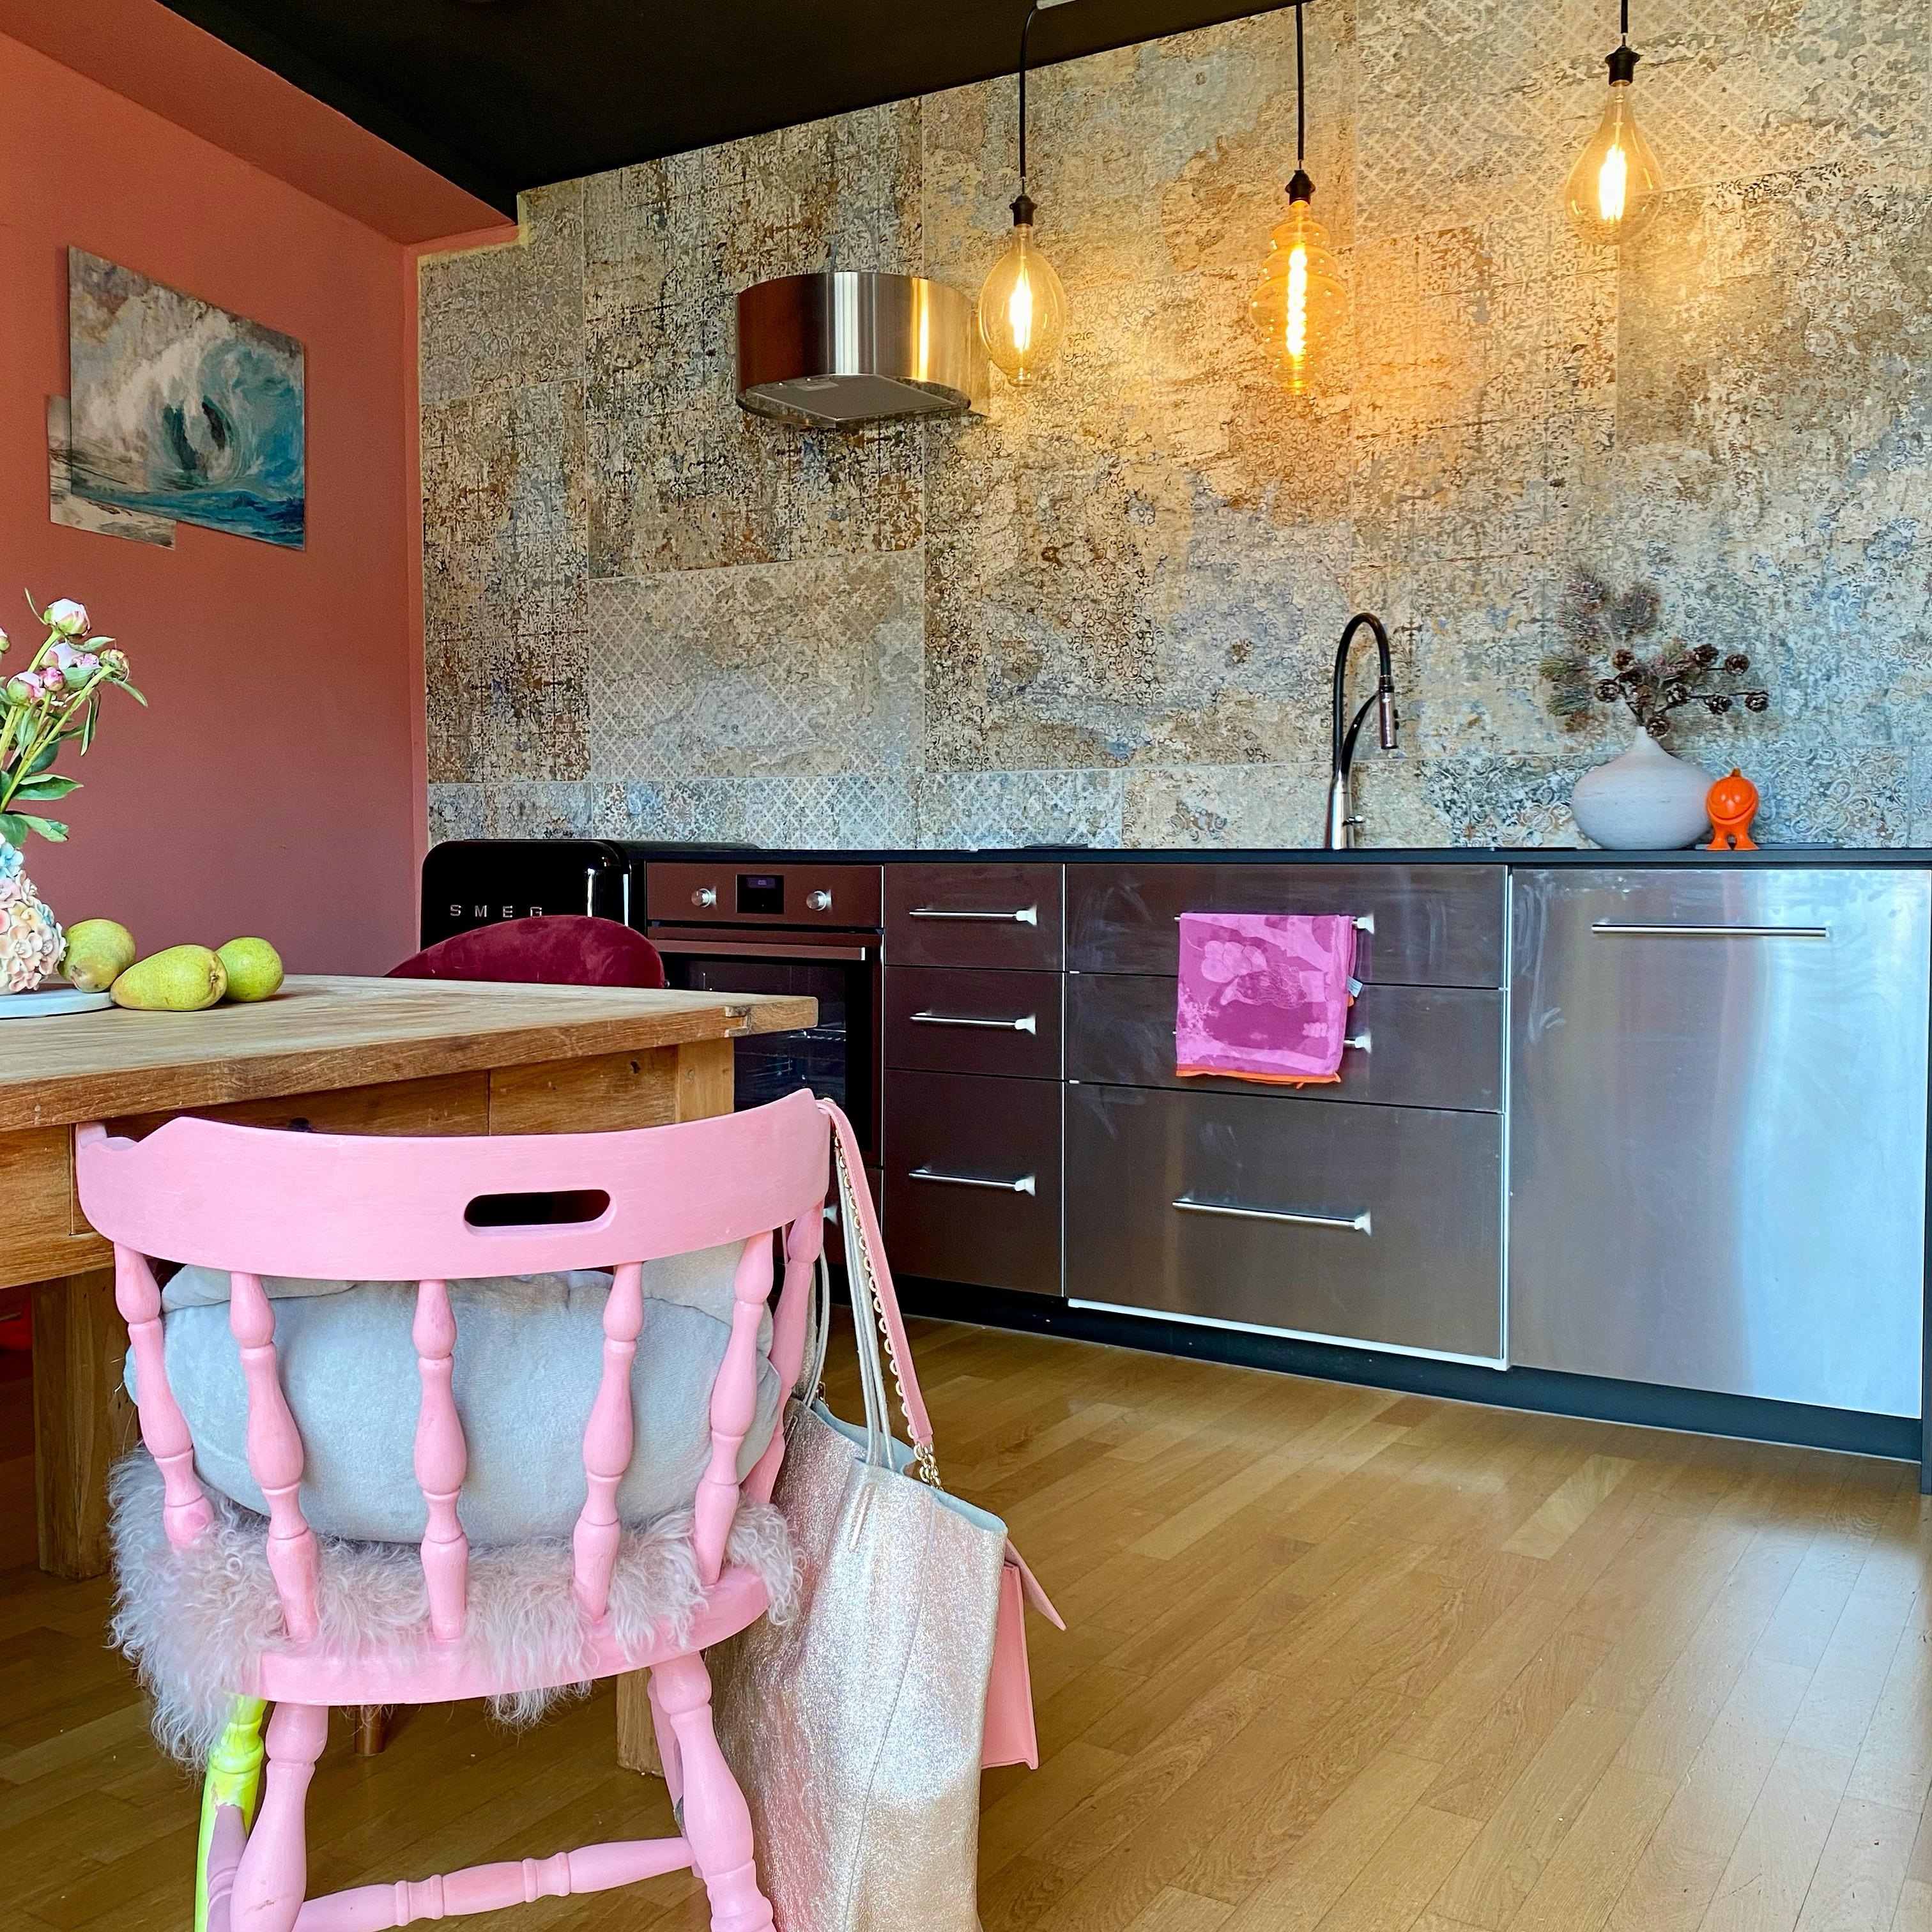 Meine Küchenzeile...ich überlege noch, welche Fronten mir besser gefallen würden. Vielleicht pink?
#küche #rosa